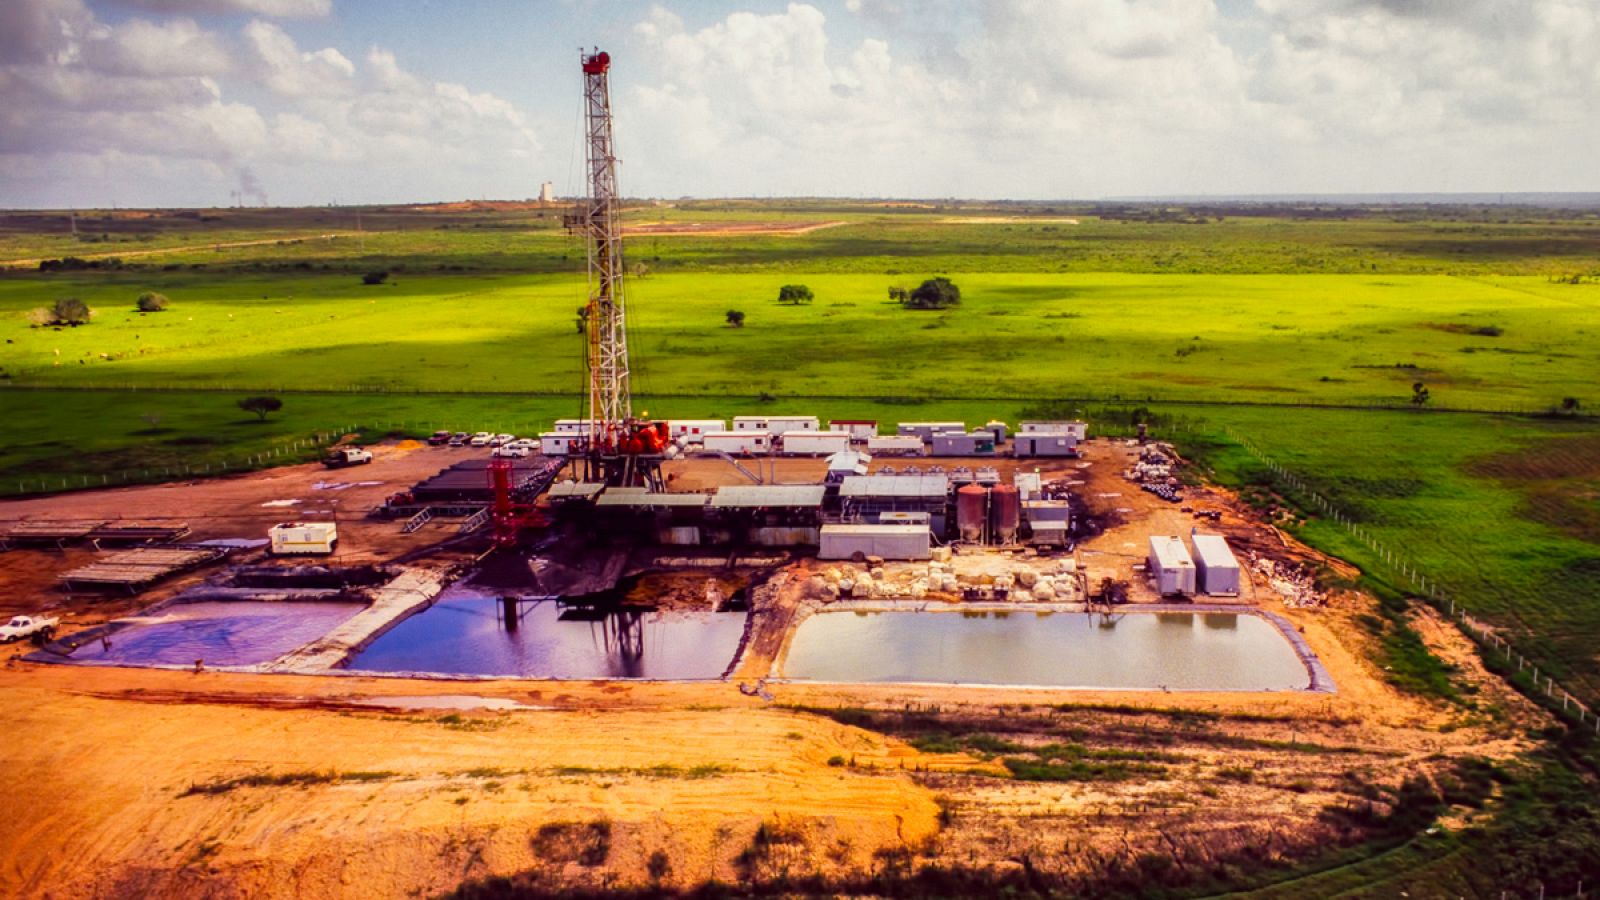 El "fracking" es la técnica de exploración petrolífera y gasífera conocida como fracturación hidráulica.